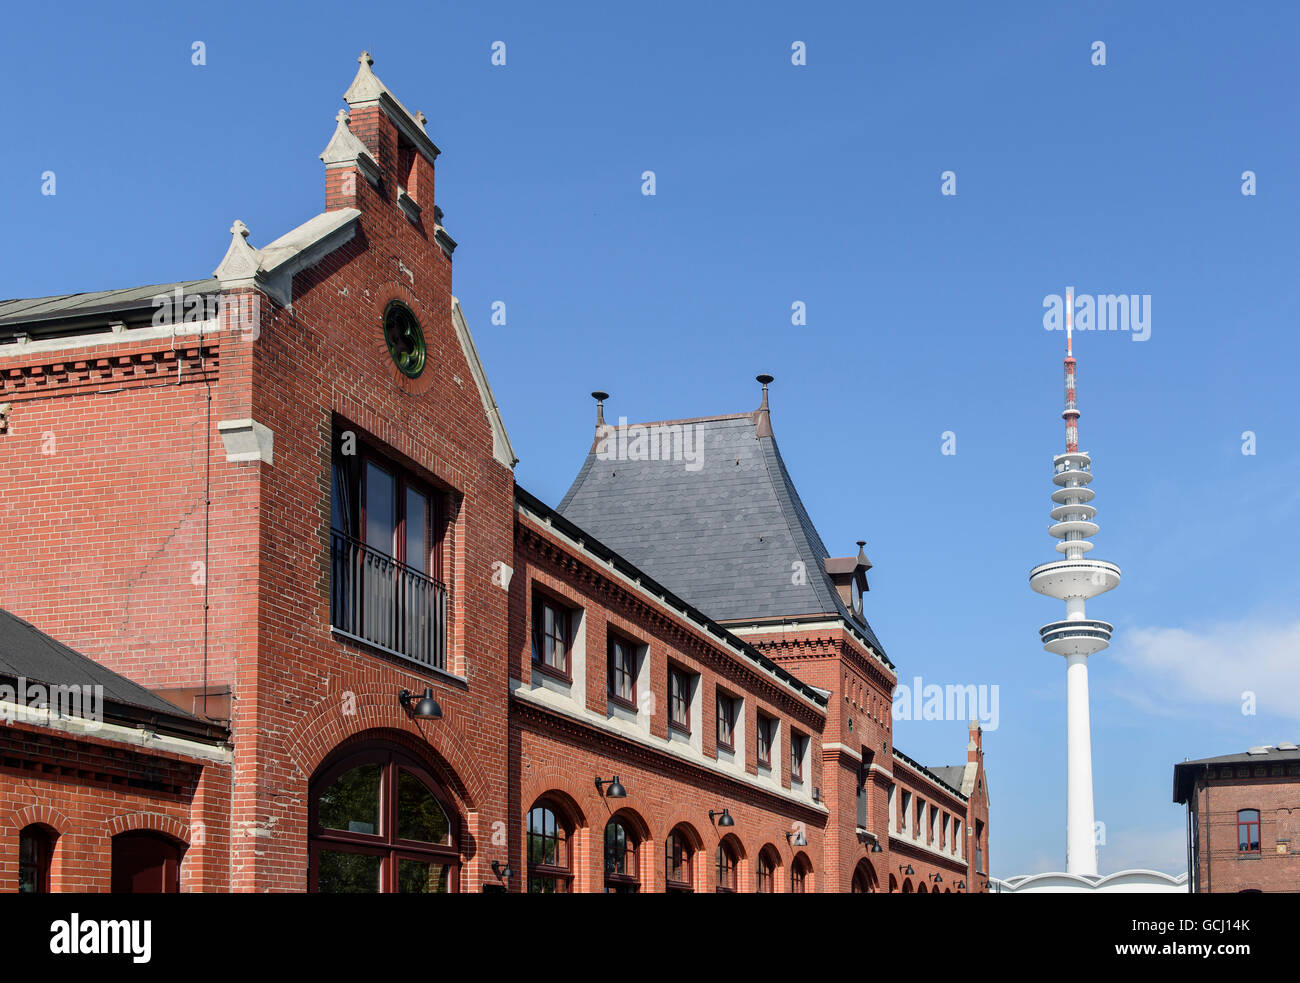 Schanzen courts, Lagerstr.34  and tv-tower, Schanzenviertel, Hamburg-Altona,  Germany Stock Photo